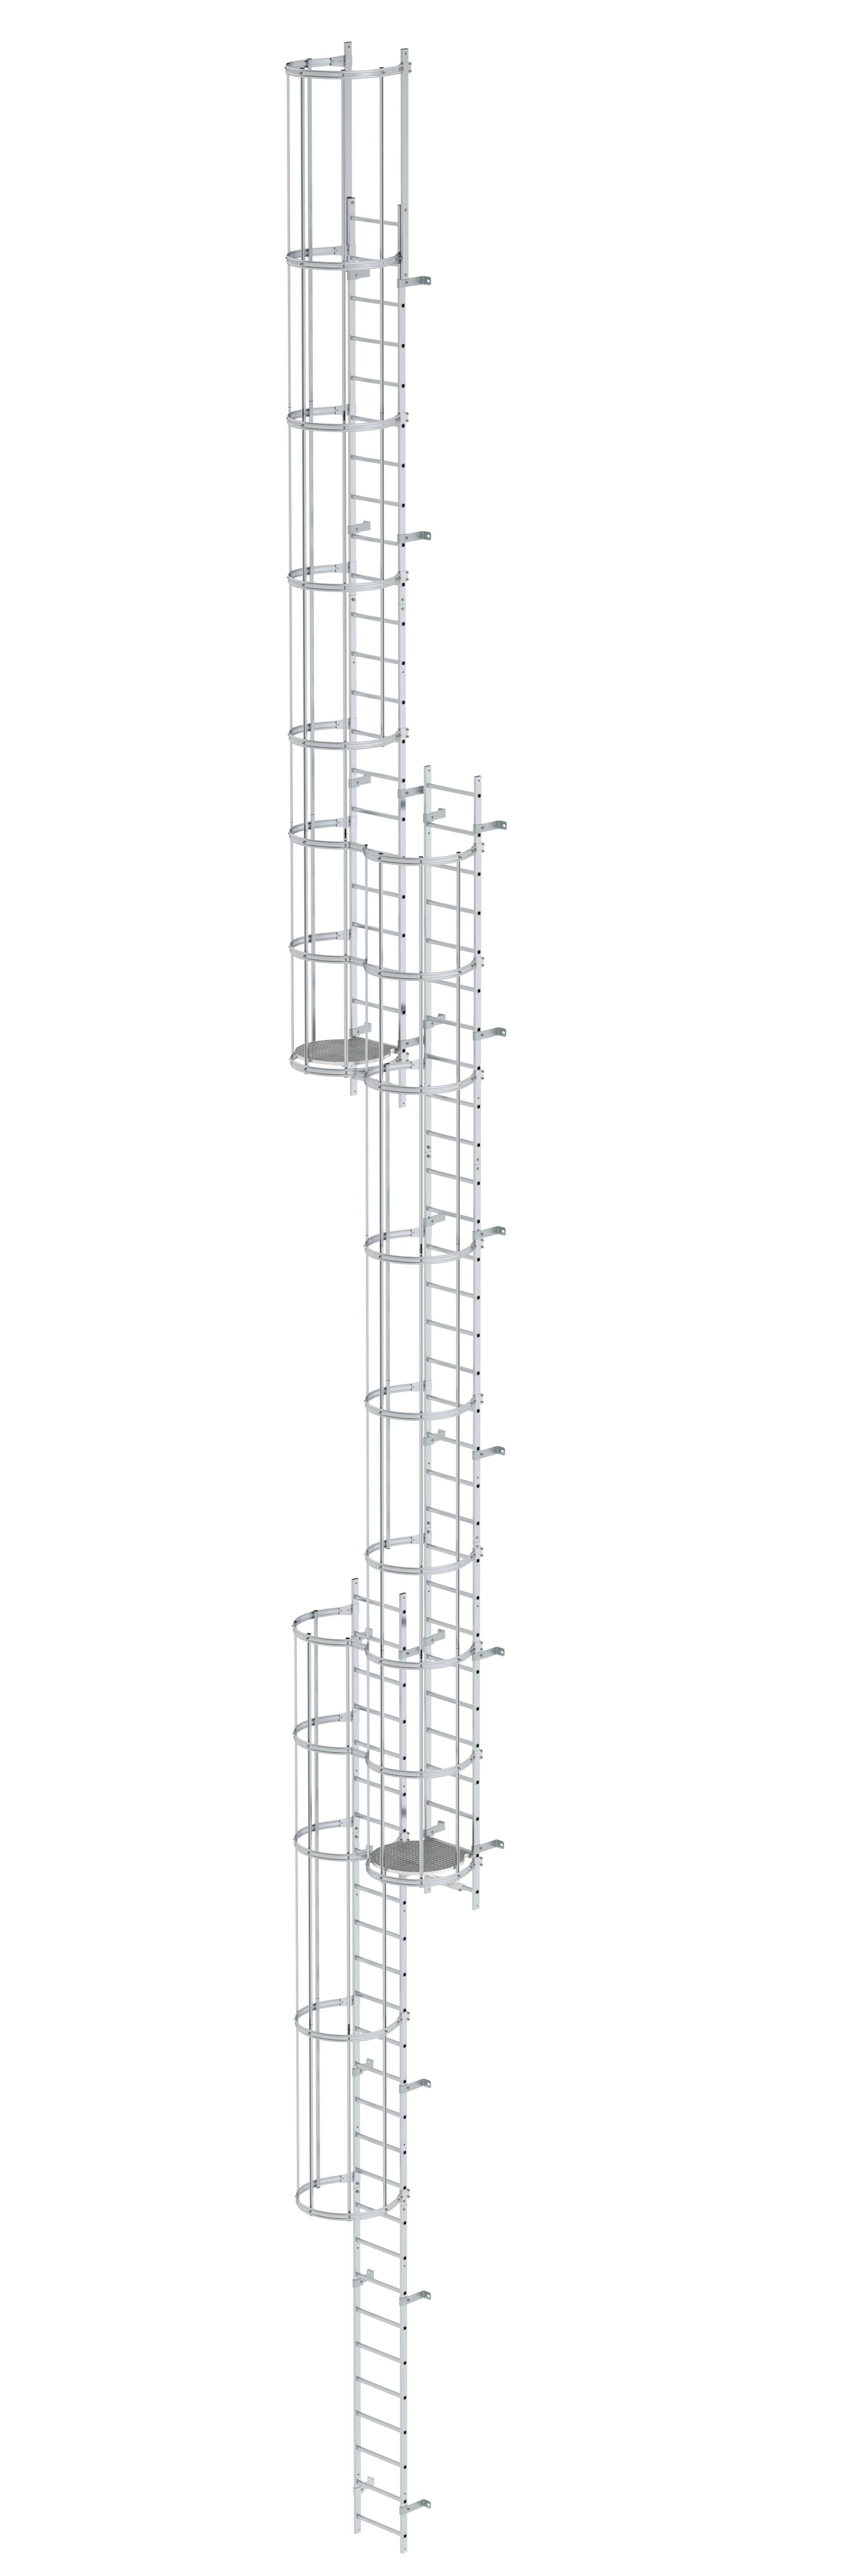 Mehrzügige Steigleiter mit Rückenschutz (Notleiter) Aluminium blank 18,84m